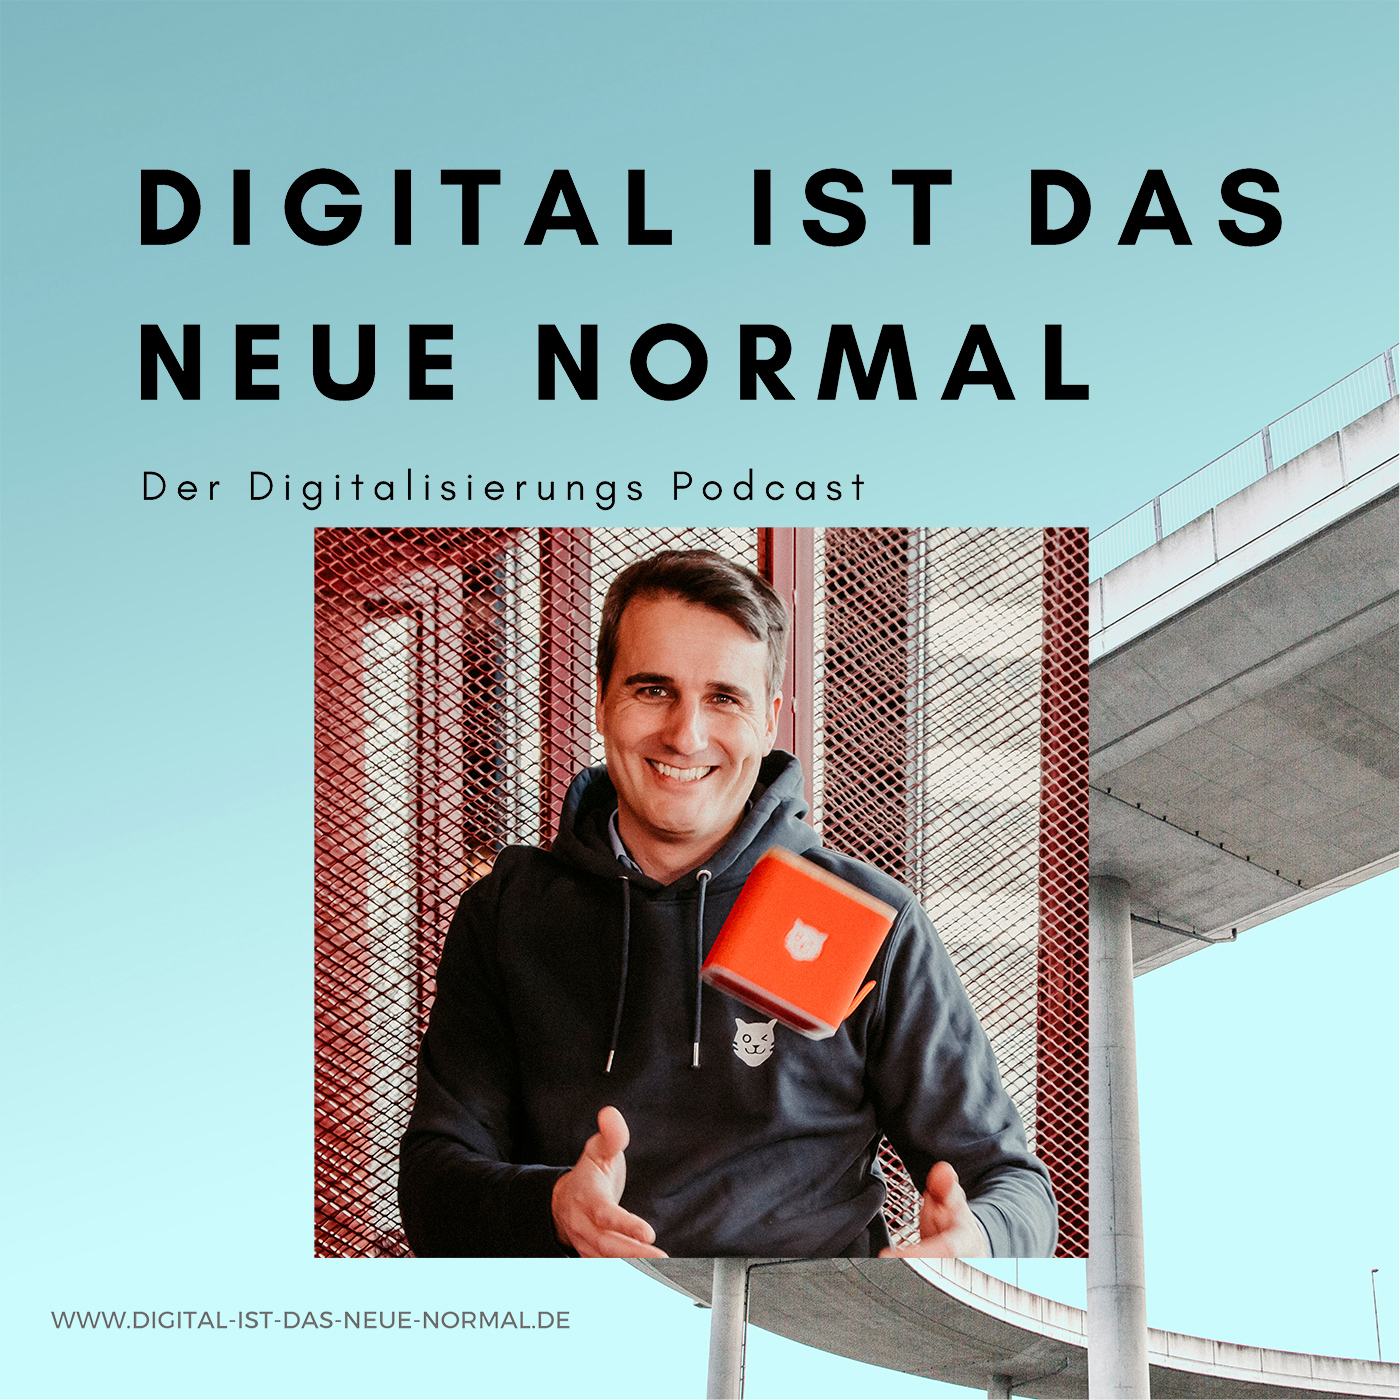 Digitalisierung im Kinderzimmer, mit TigerBox Gründer Martin Kurzhals - Der Digitalisierungs Podcast - Digital ist das Neue Normal von Sören F. Sörries und Thomas Flick